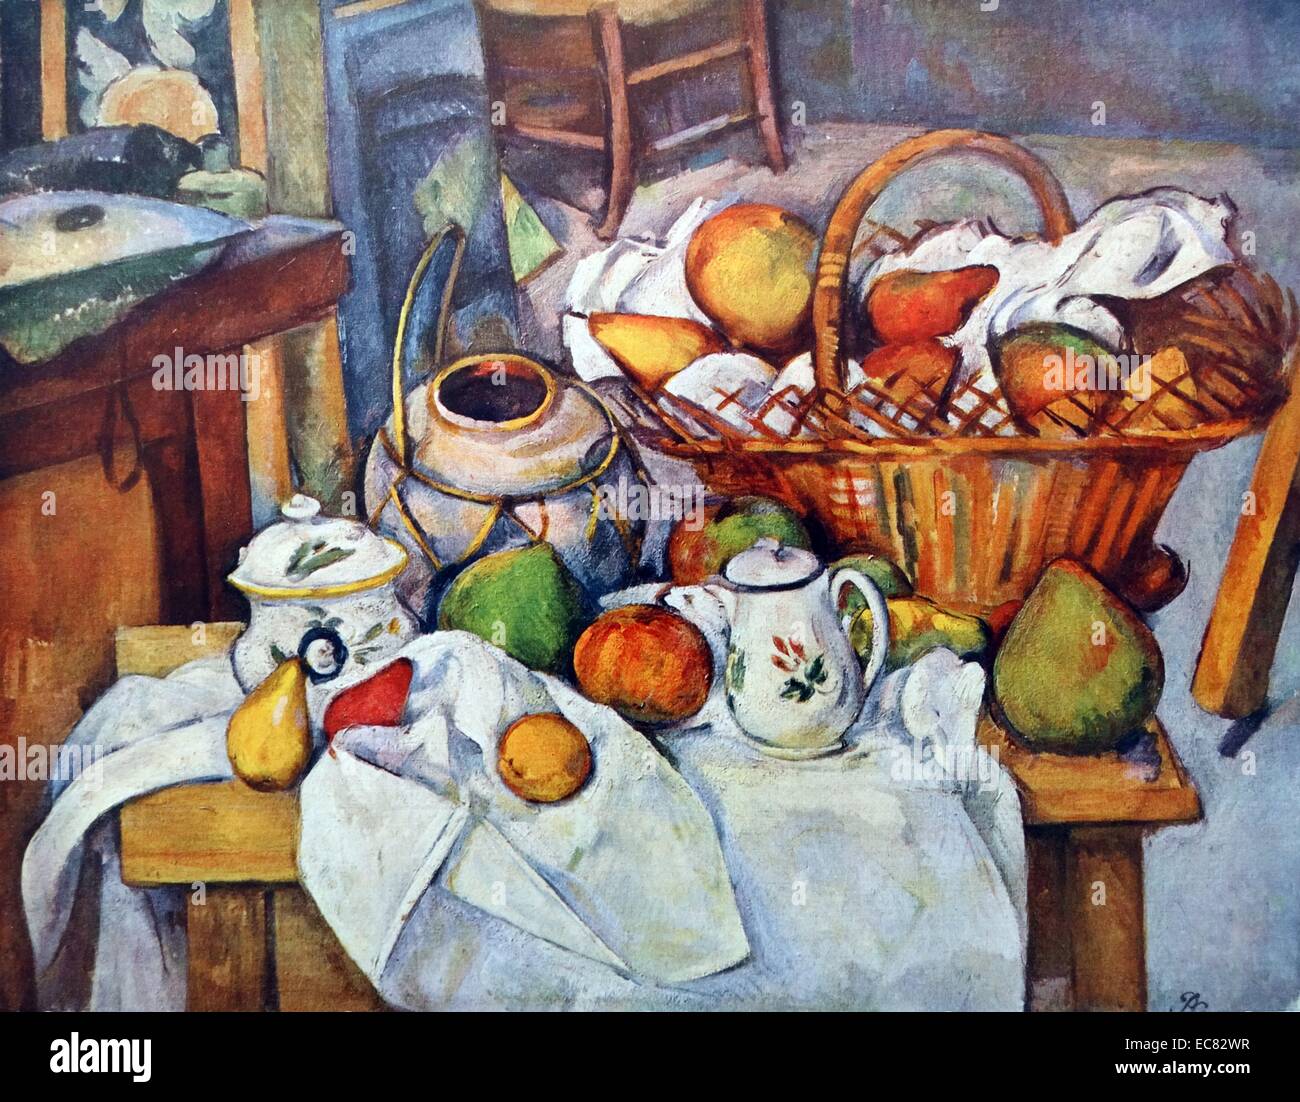 Stillleben mit Obstkorb vom französischen Künstler Paul Cézanne (1839-1906) und post-impressionistischen Malers. Datiert 1886 Stockfoto